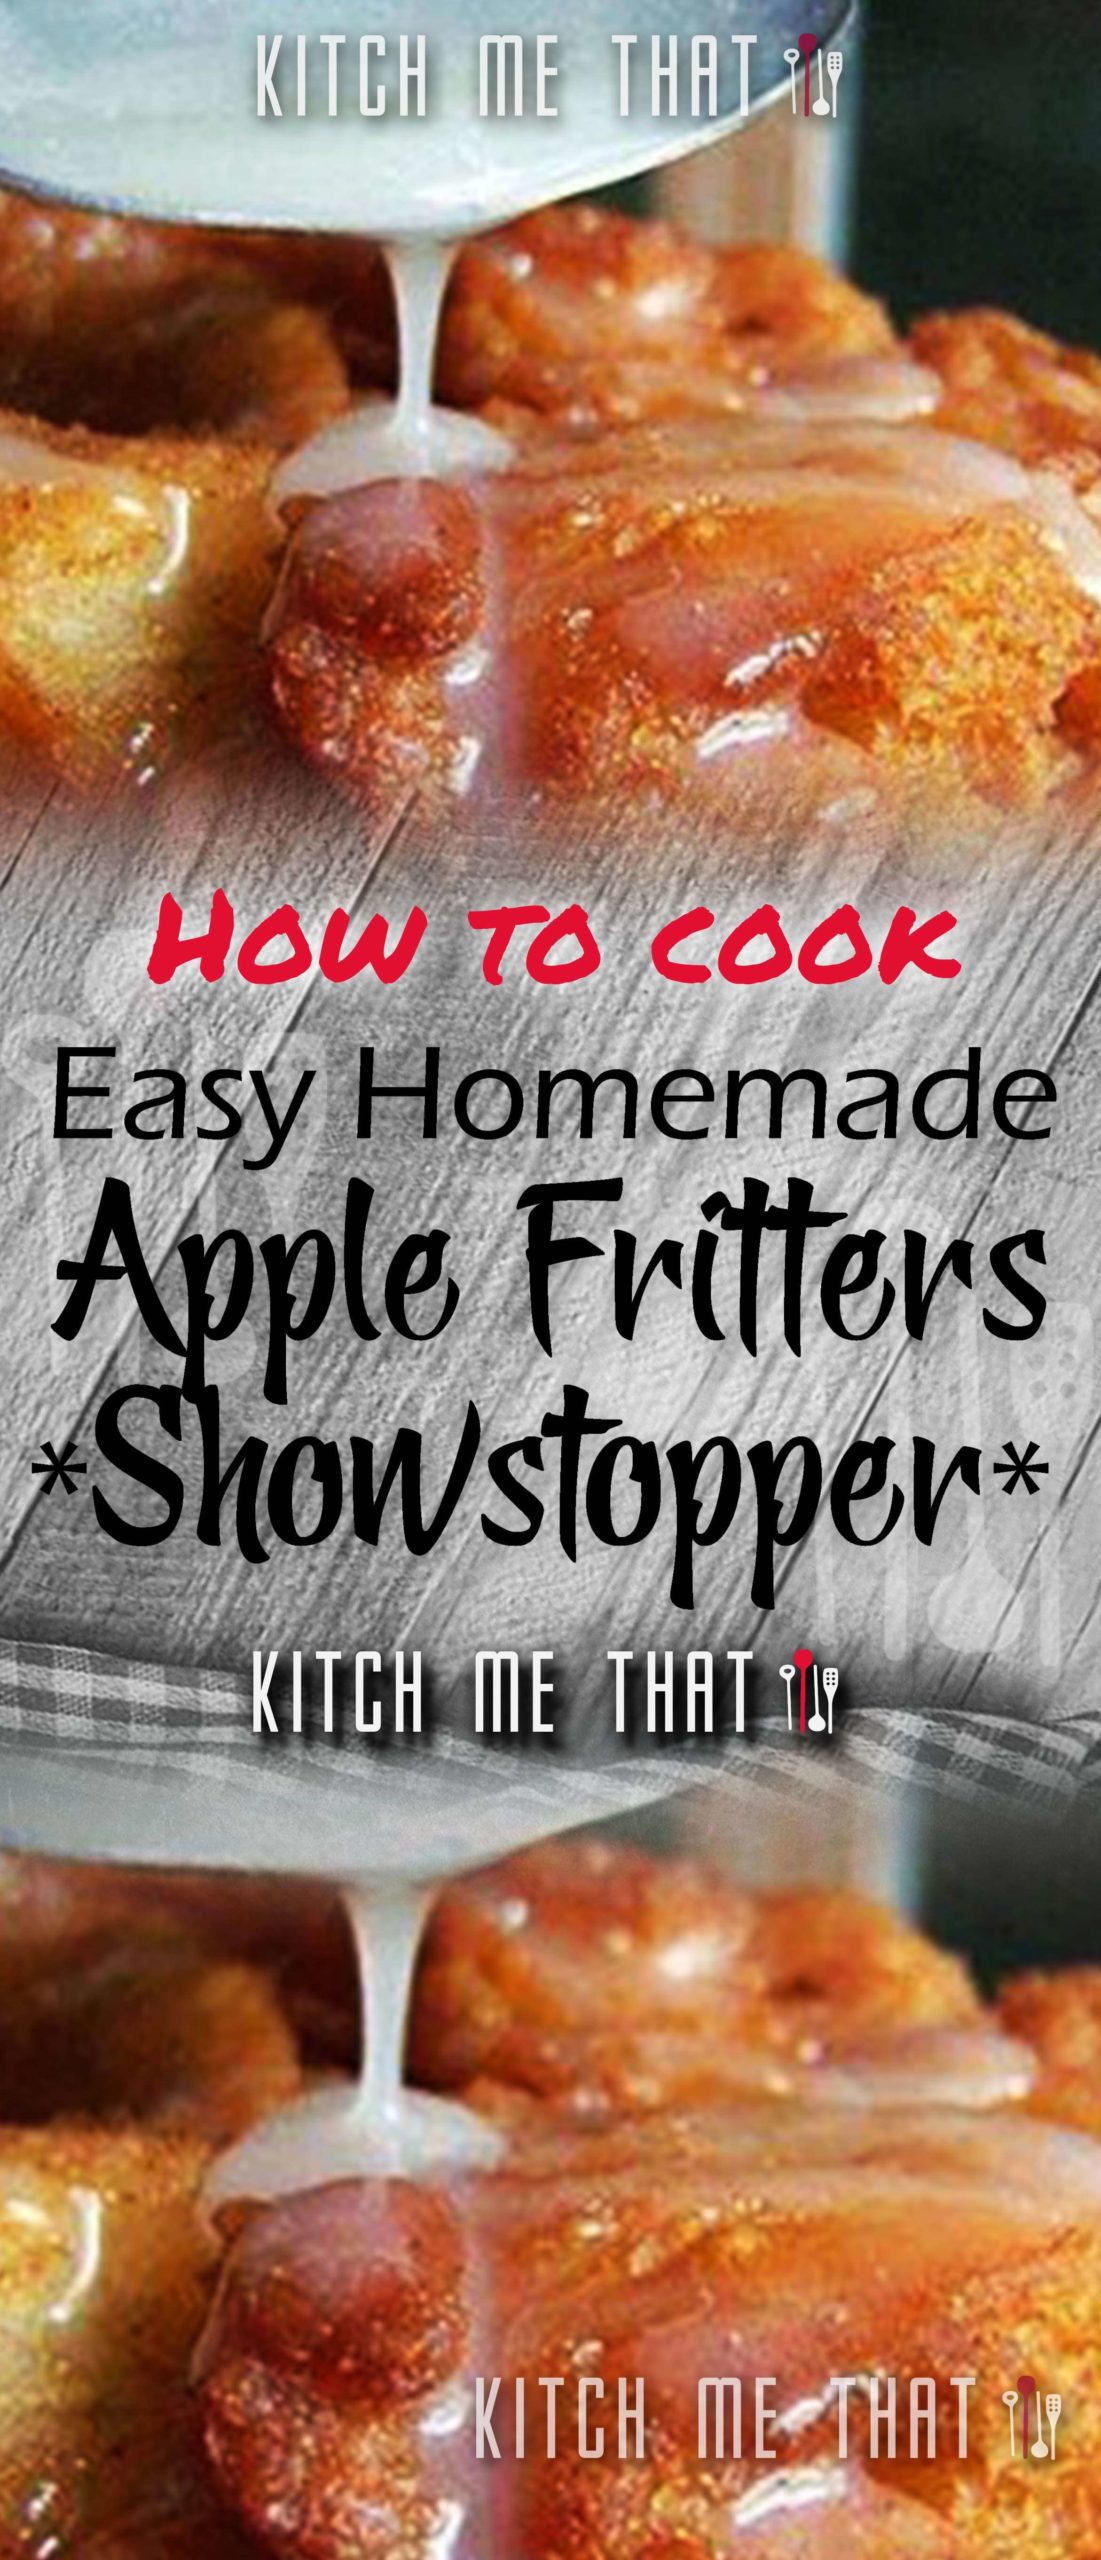 Easy Homemade Apple Fritters